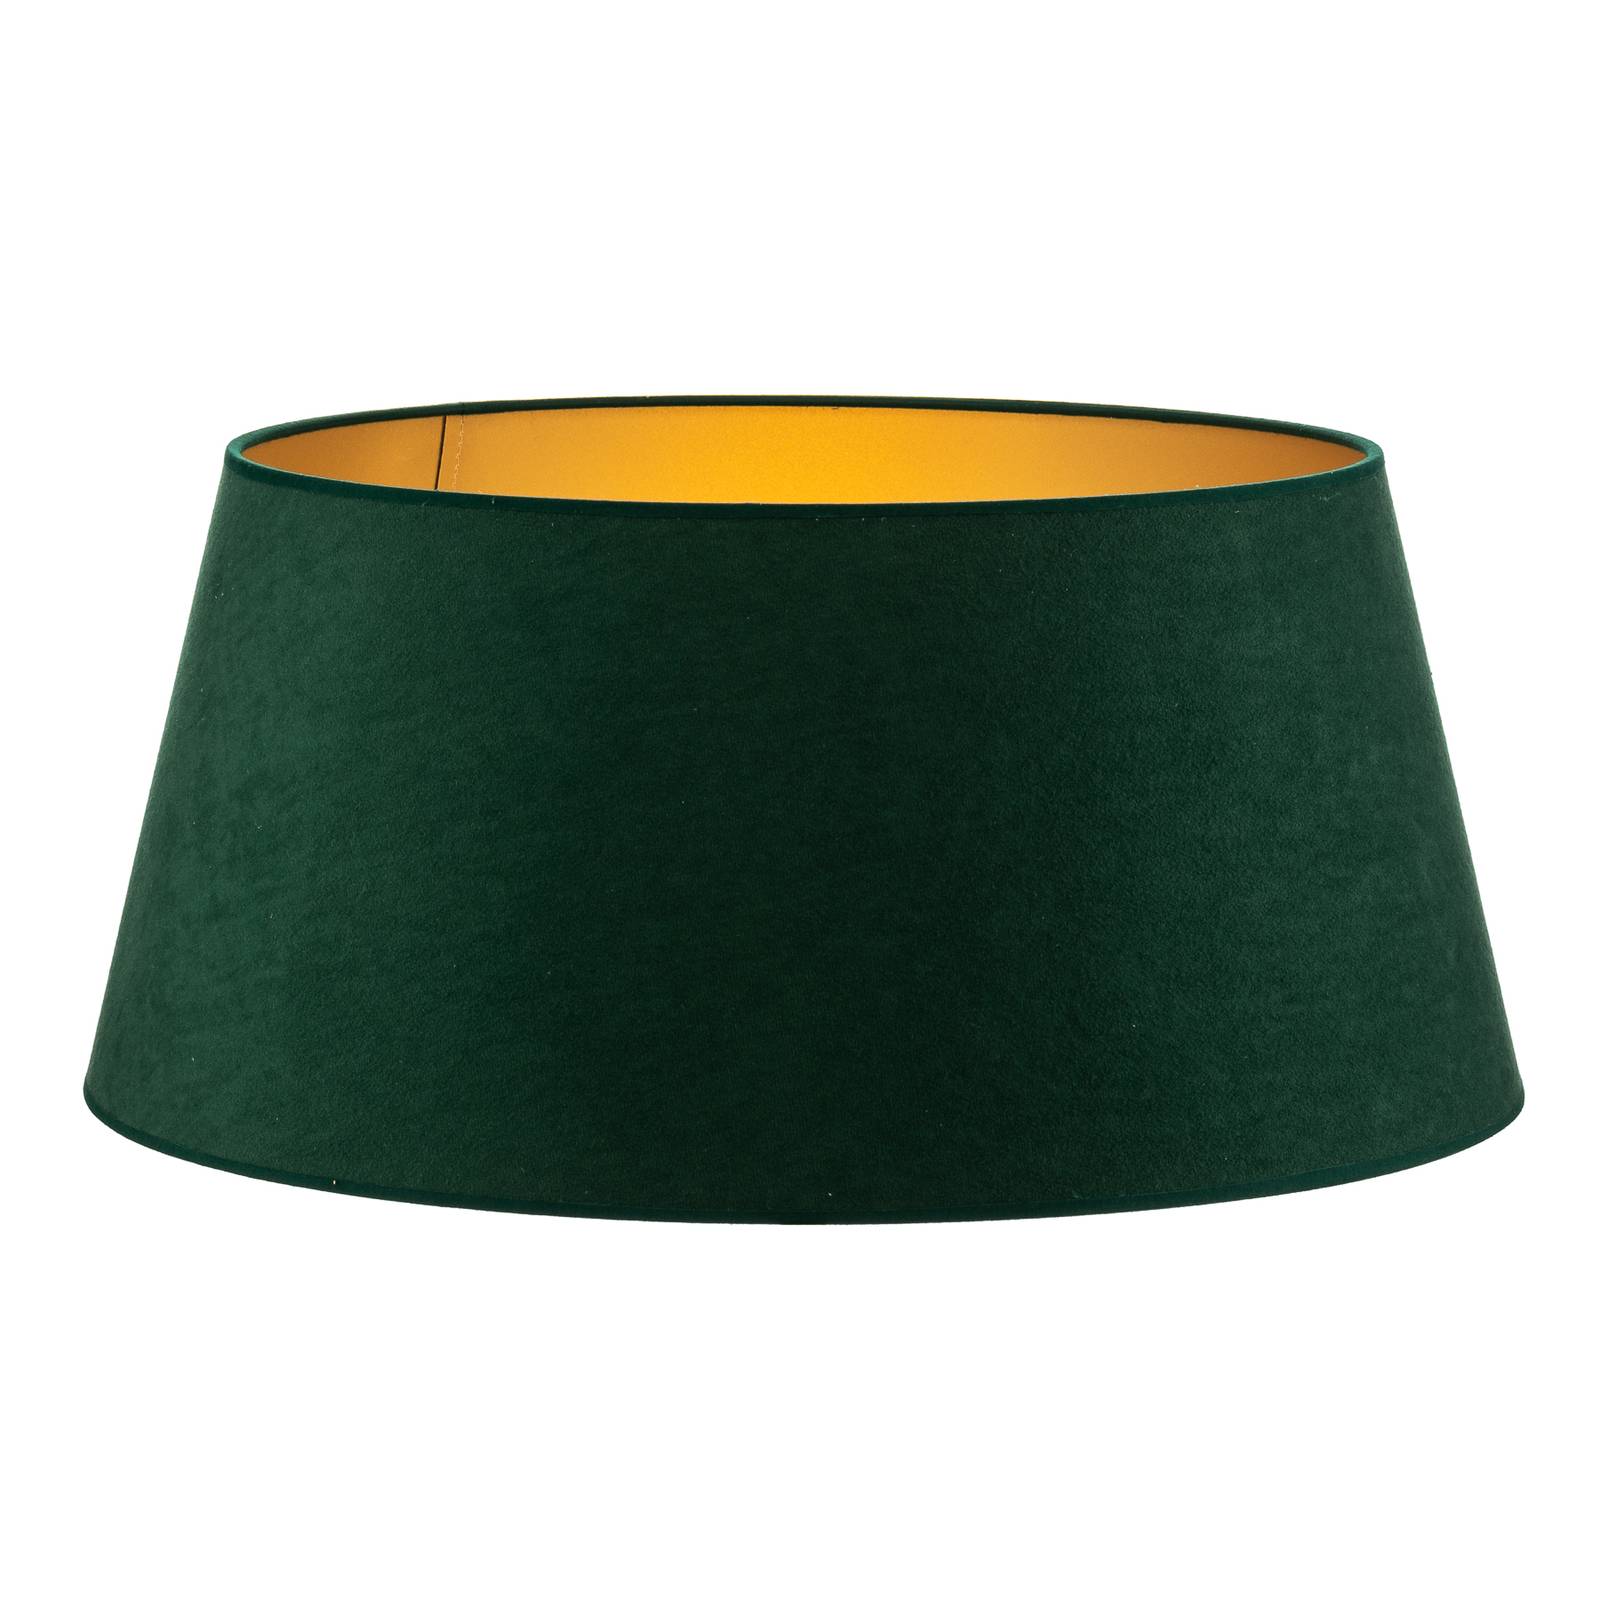 Duolla cone lámpaernyő 25,5 cm magas, sötétzöld/arany